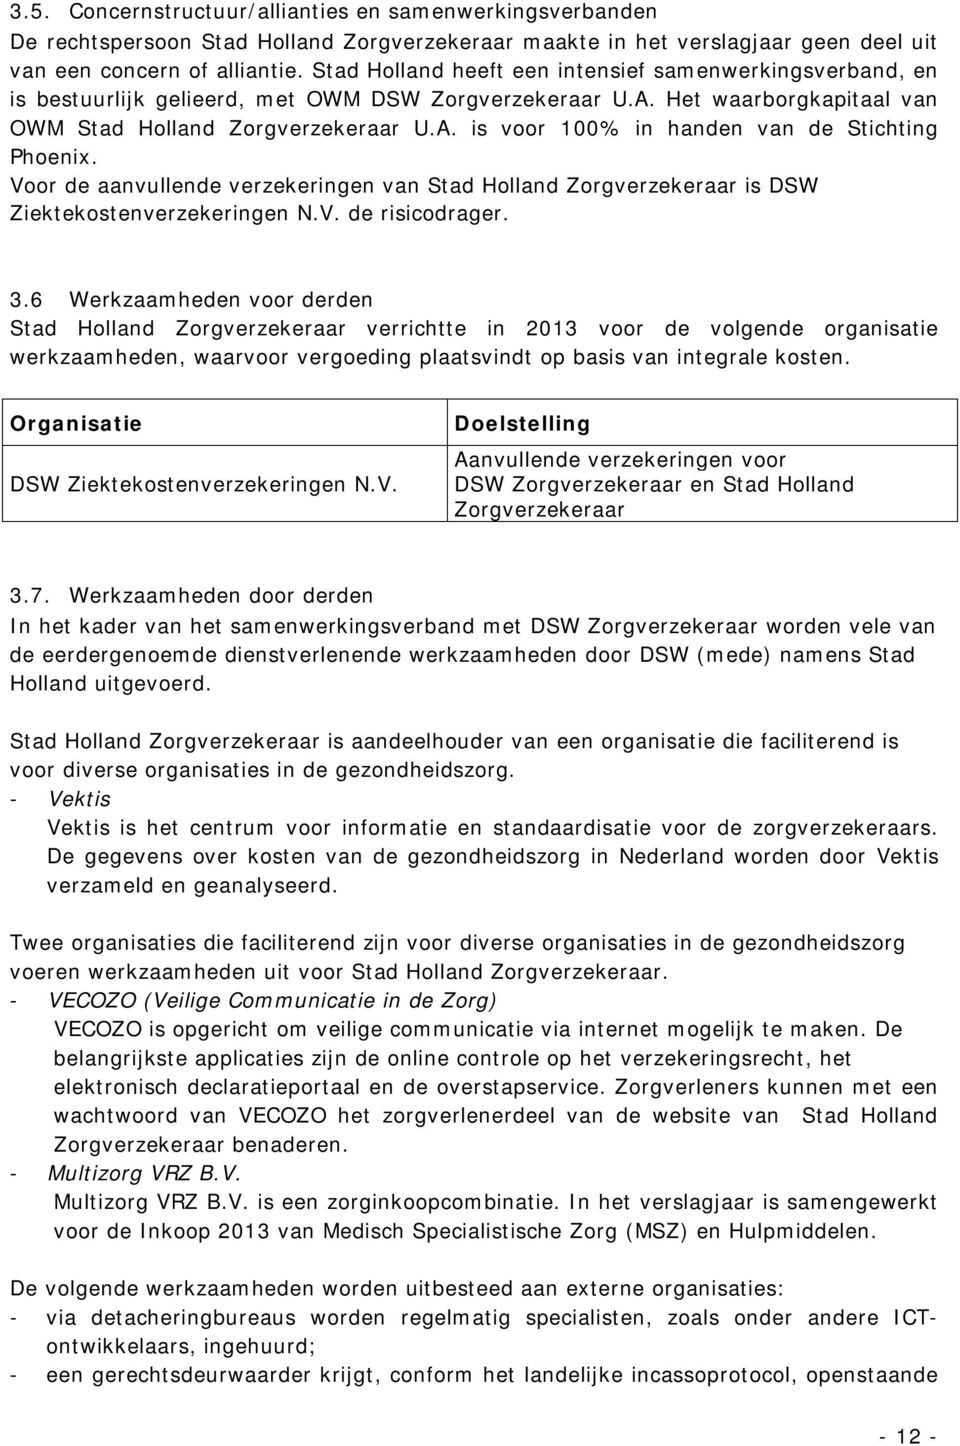 Voor de aanvullende verzekeringen van Stad Holland Zorgverzekeraar is DSW Ziektekostenverzekeringen N.V. de risicodrager. 3.